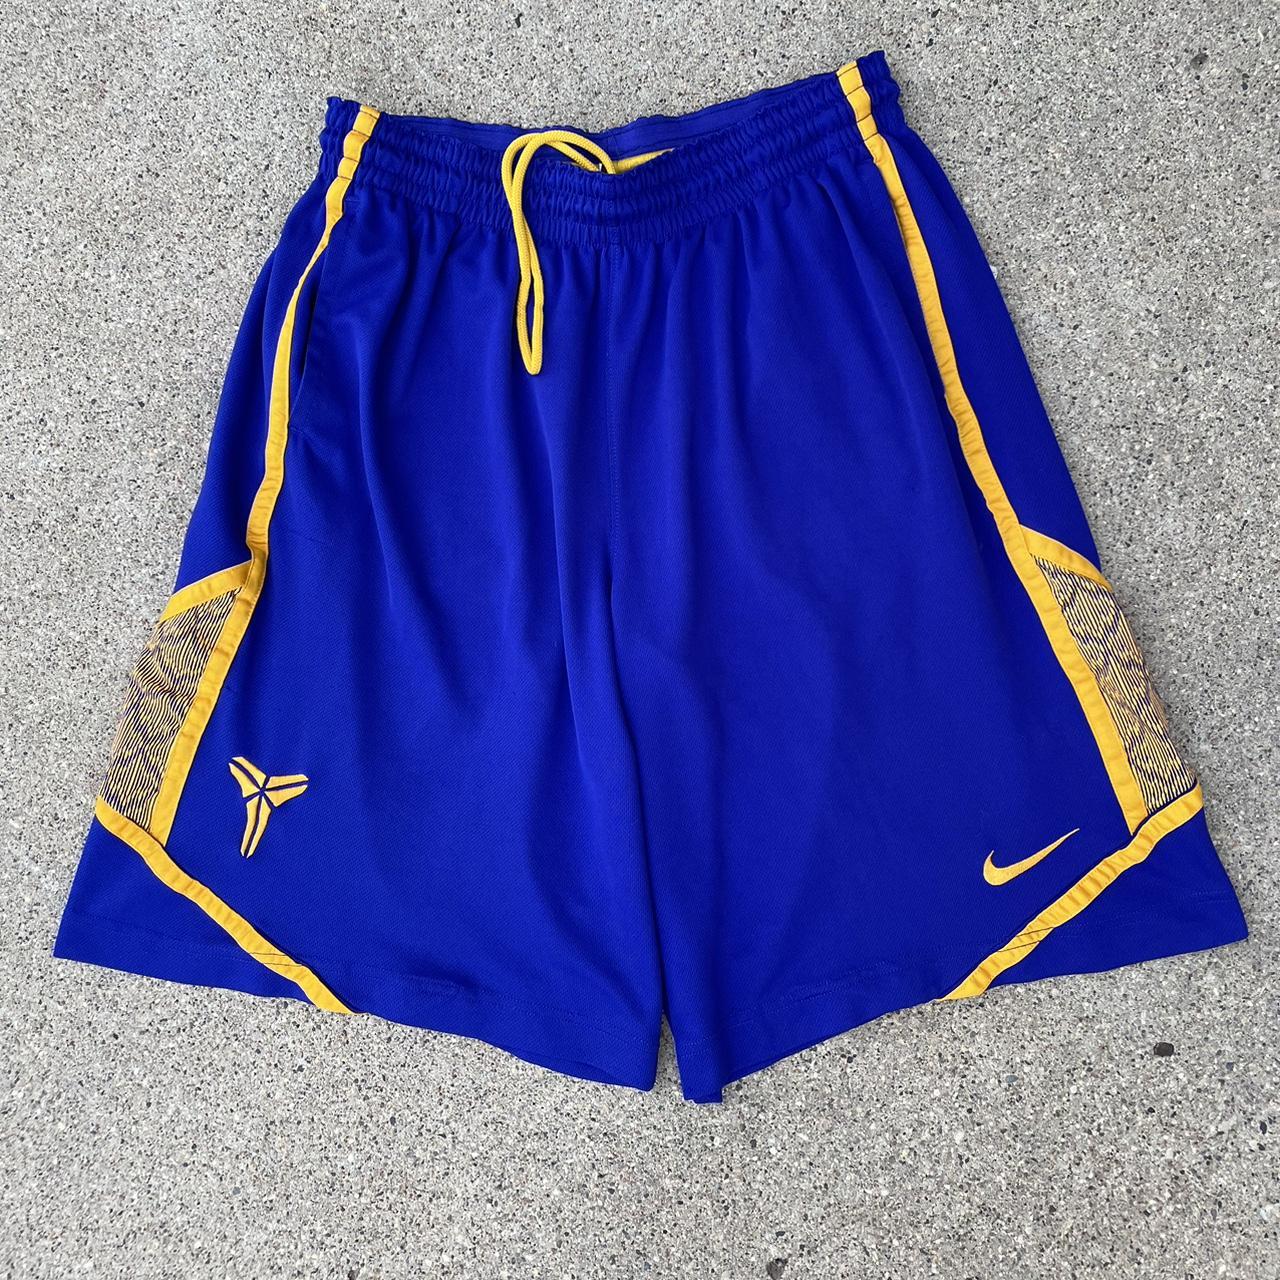 Nike, Shorts, Nike Kobe Bryant Basketball Shorts